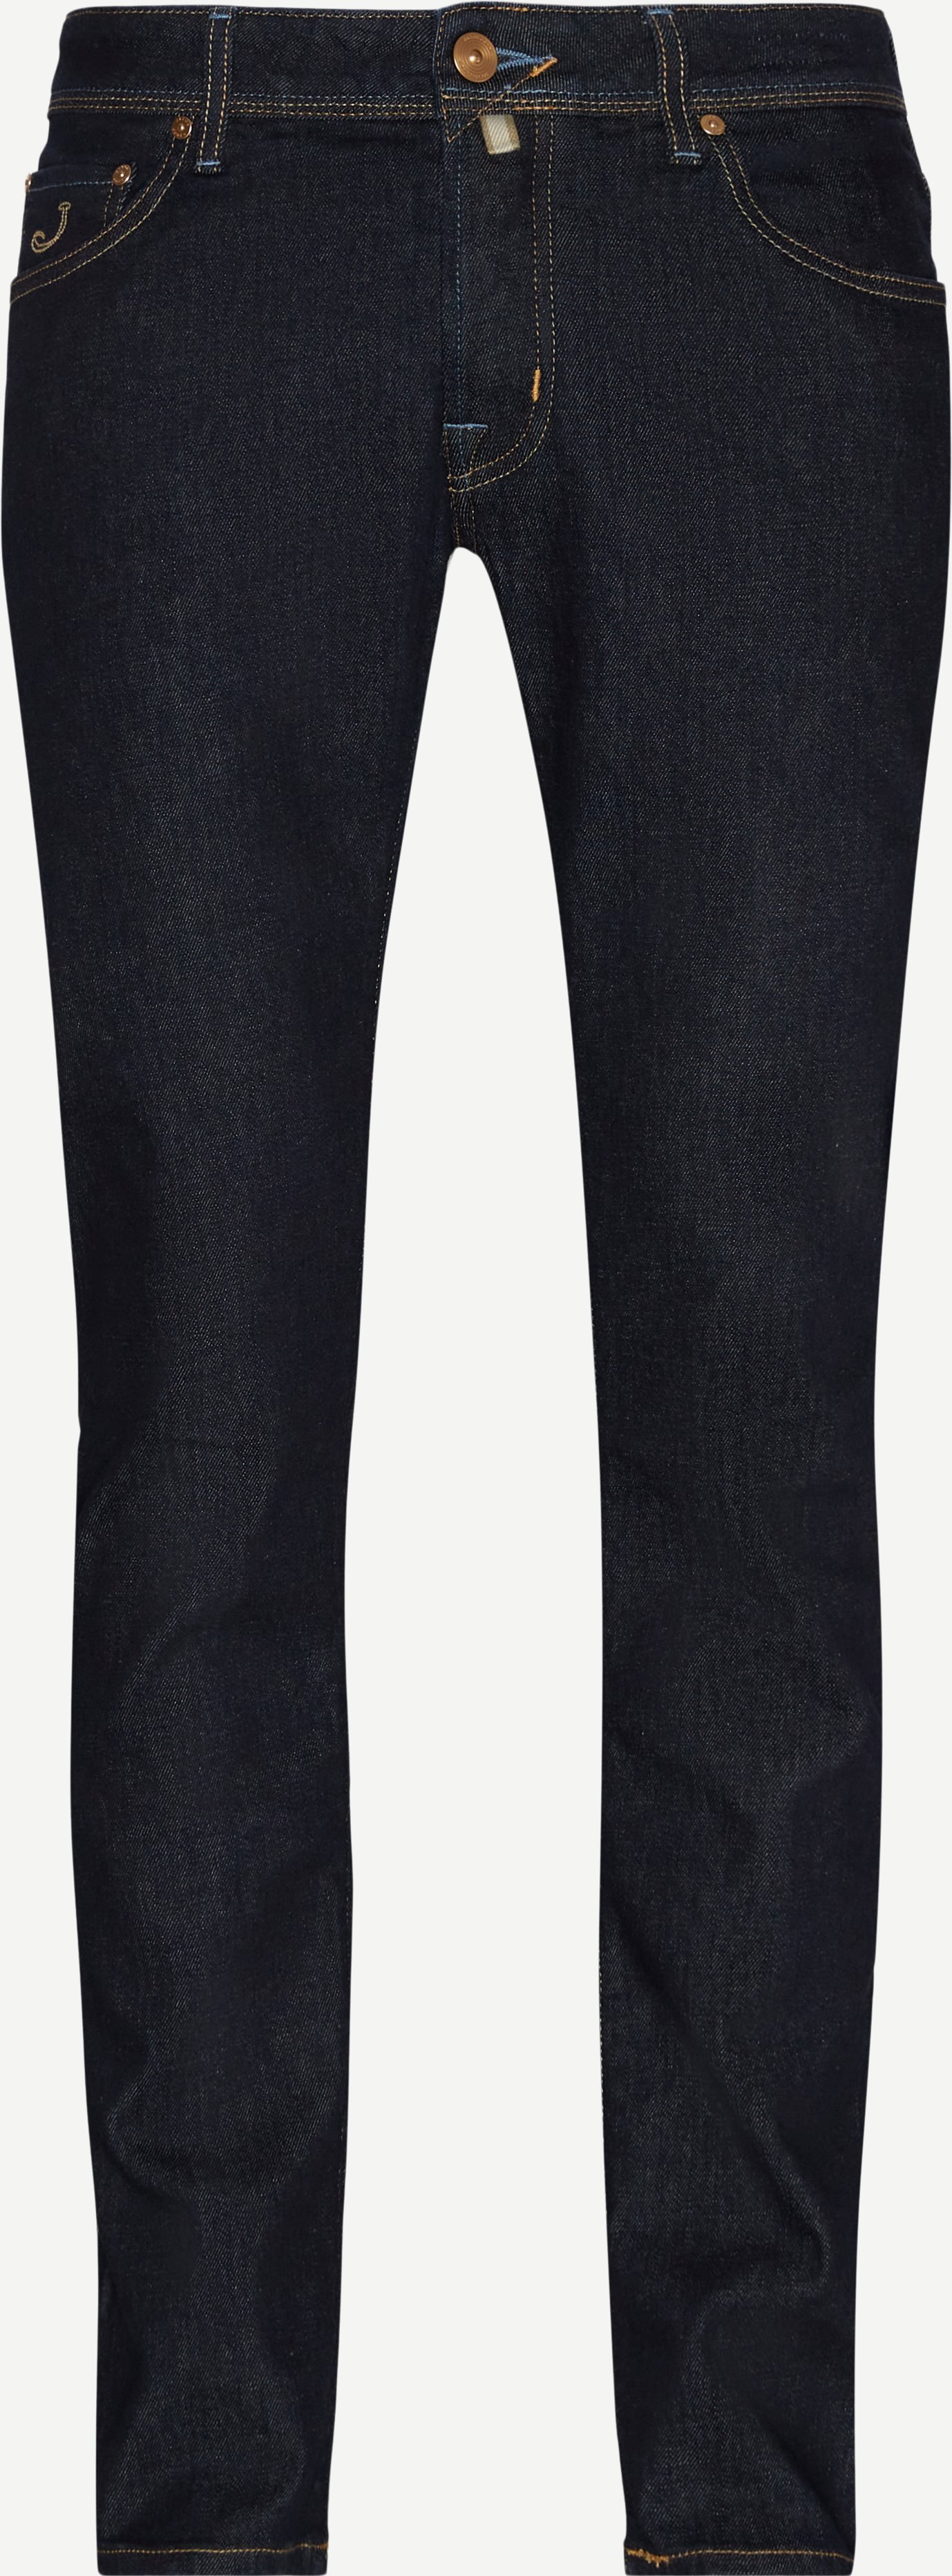 J622 3678 Nick Denim Jeans - Jeans - Slim fit - Denim